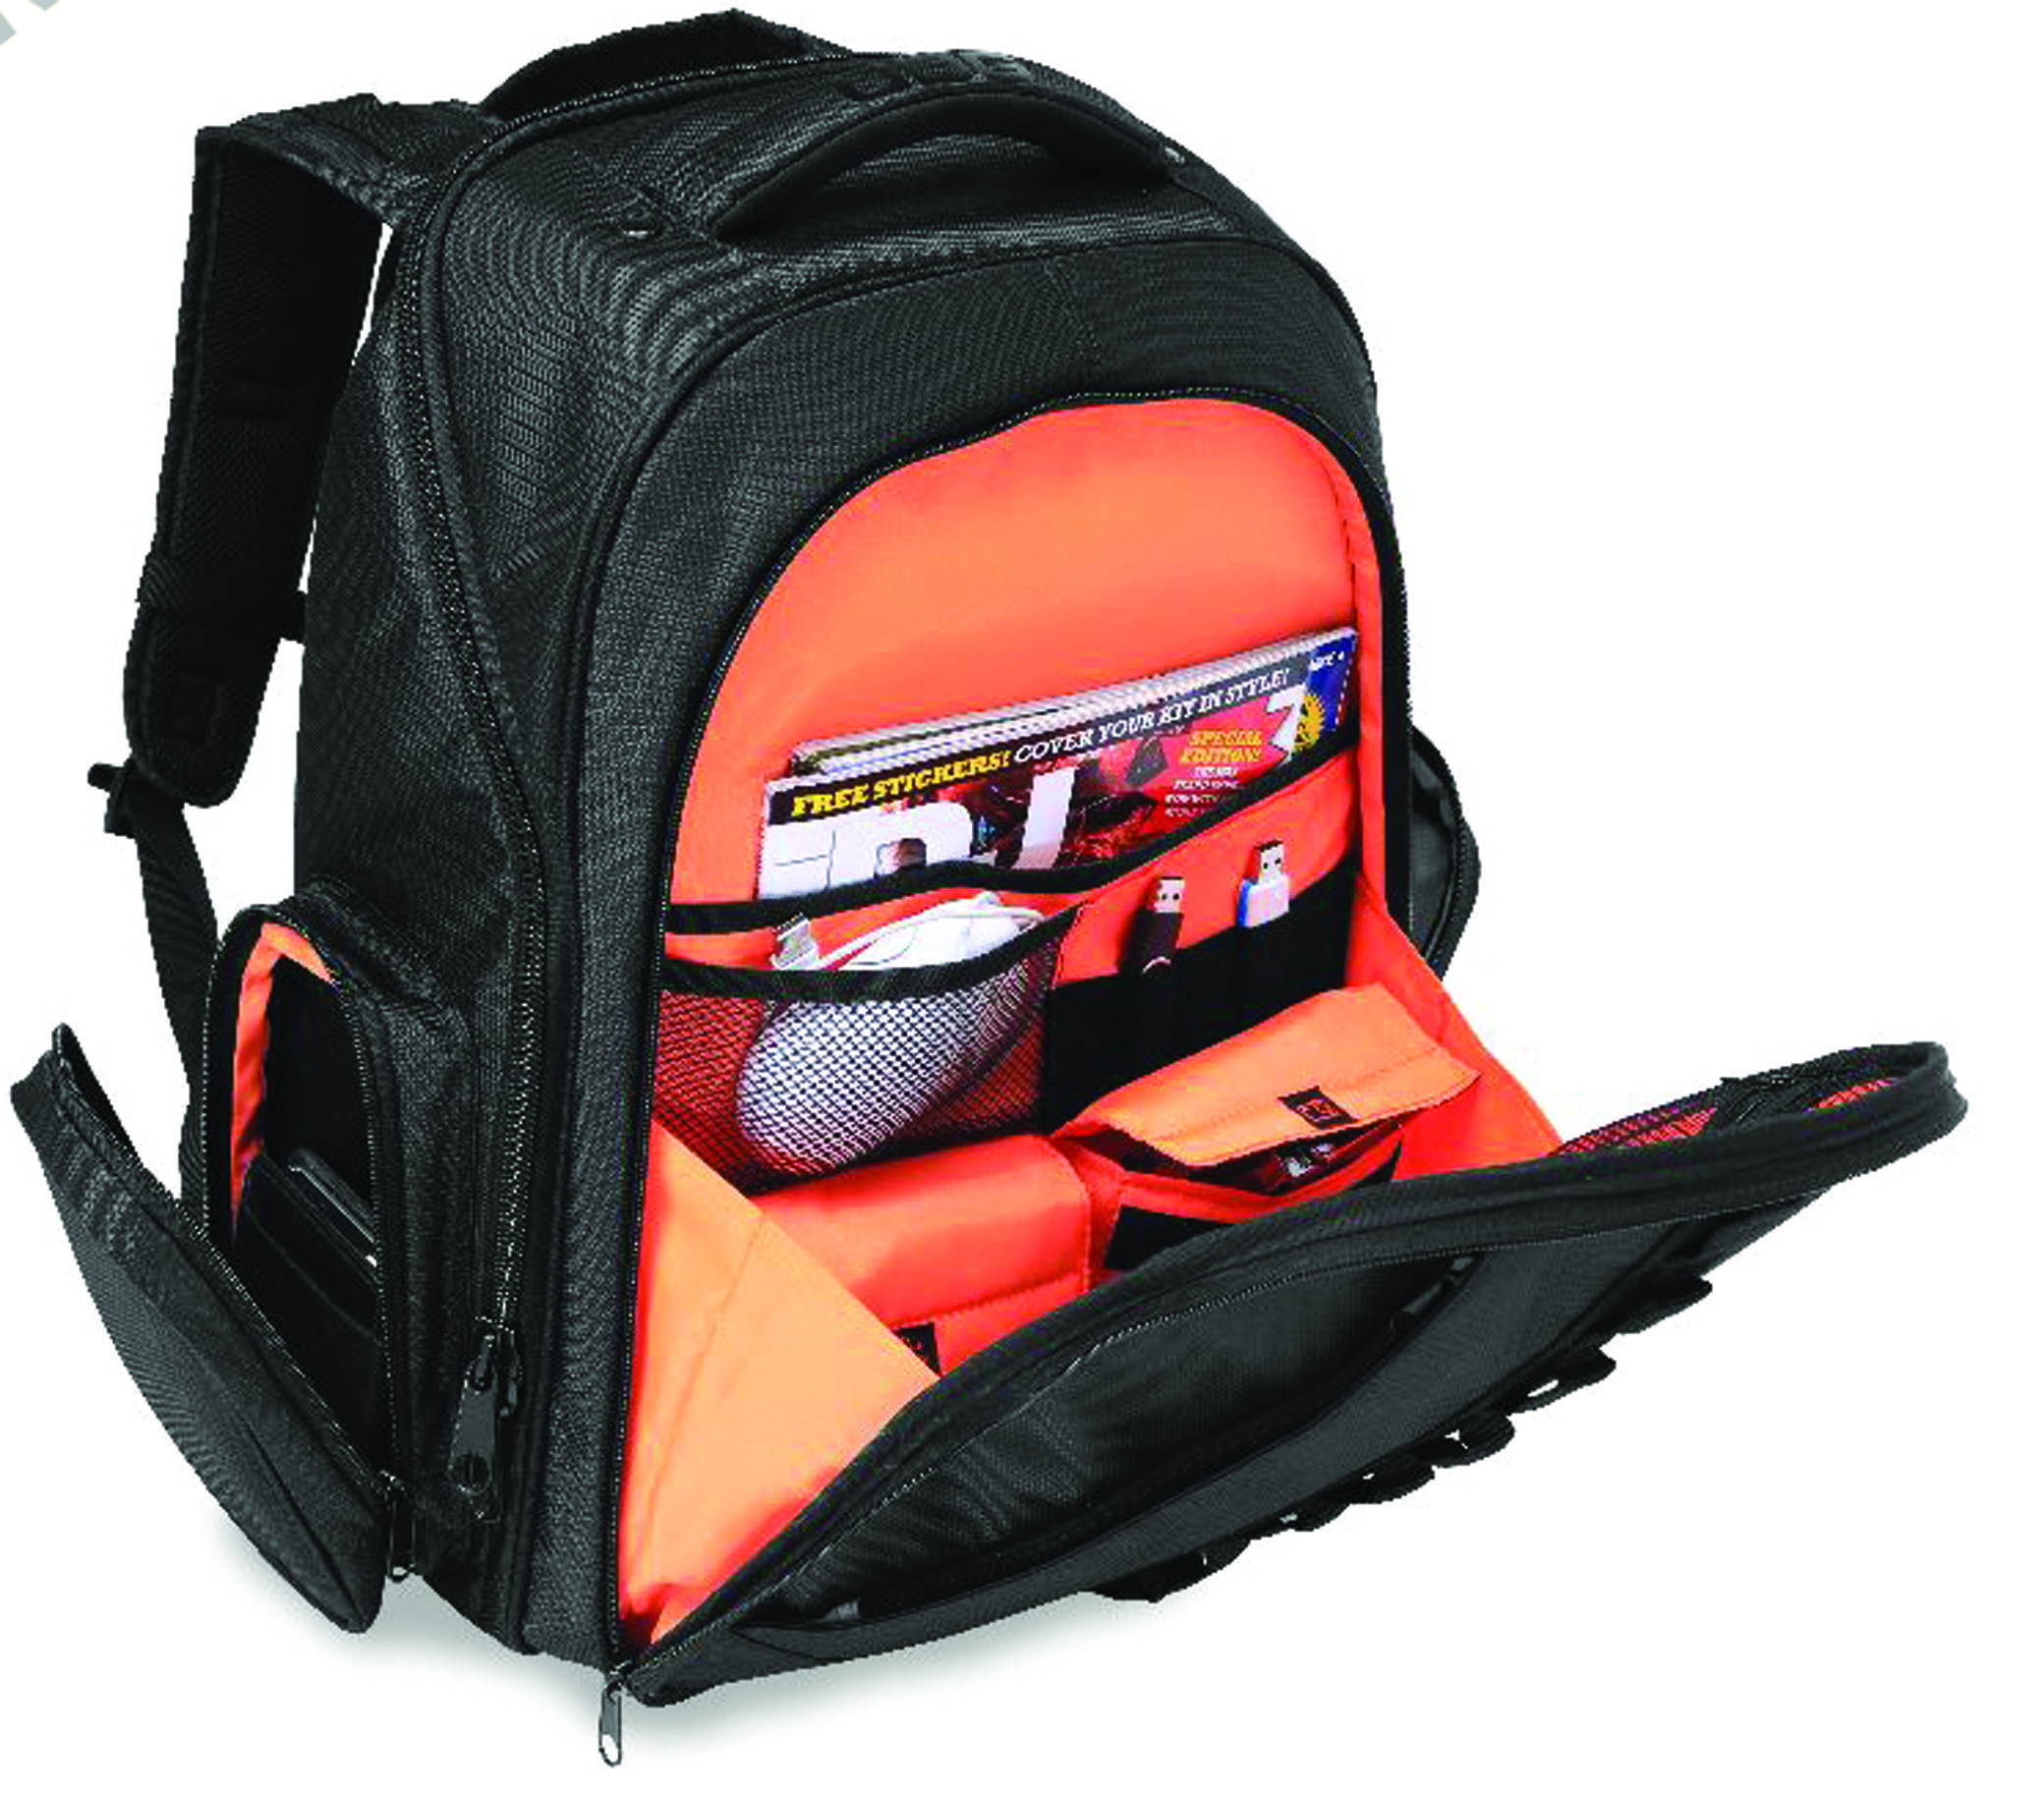 Udg Ultimate Backpack Black/orange - Trolley DJ - Variation 2